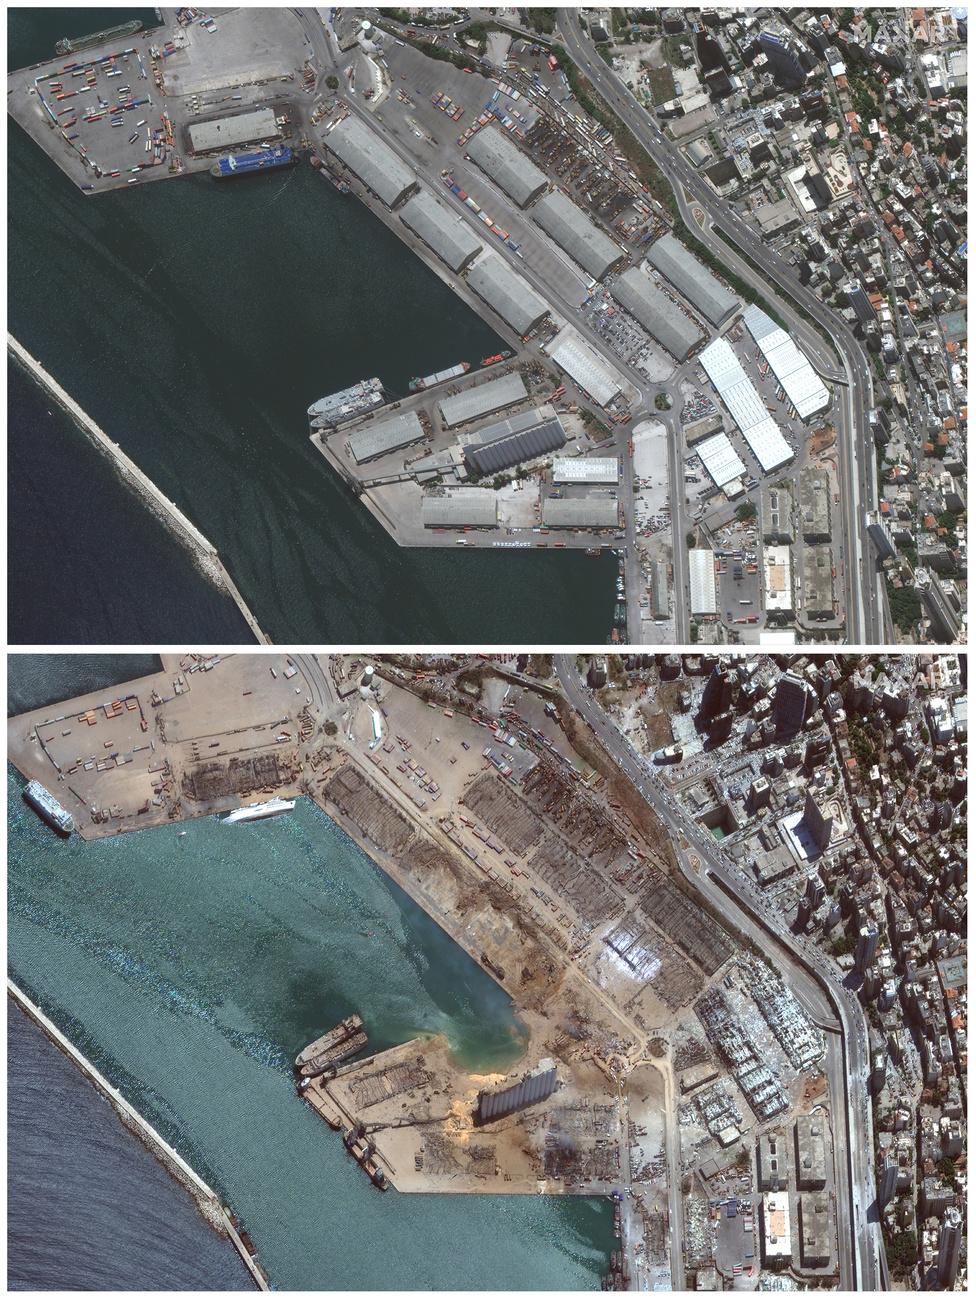 Le port de Beyrouth et ses environs avant et après les explosions du 4 août 2020 (en haut, le 9 juin 2020; en bas, le 5 août 2020). [Keystone/AP - Images satellite/Maxar Technologies]